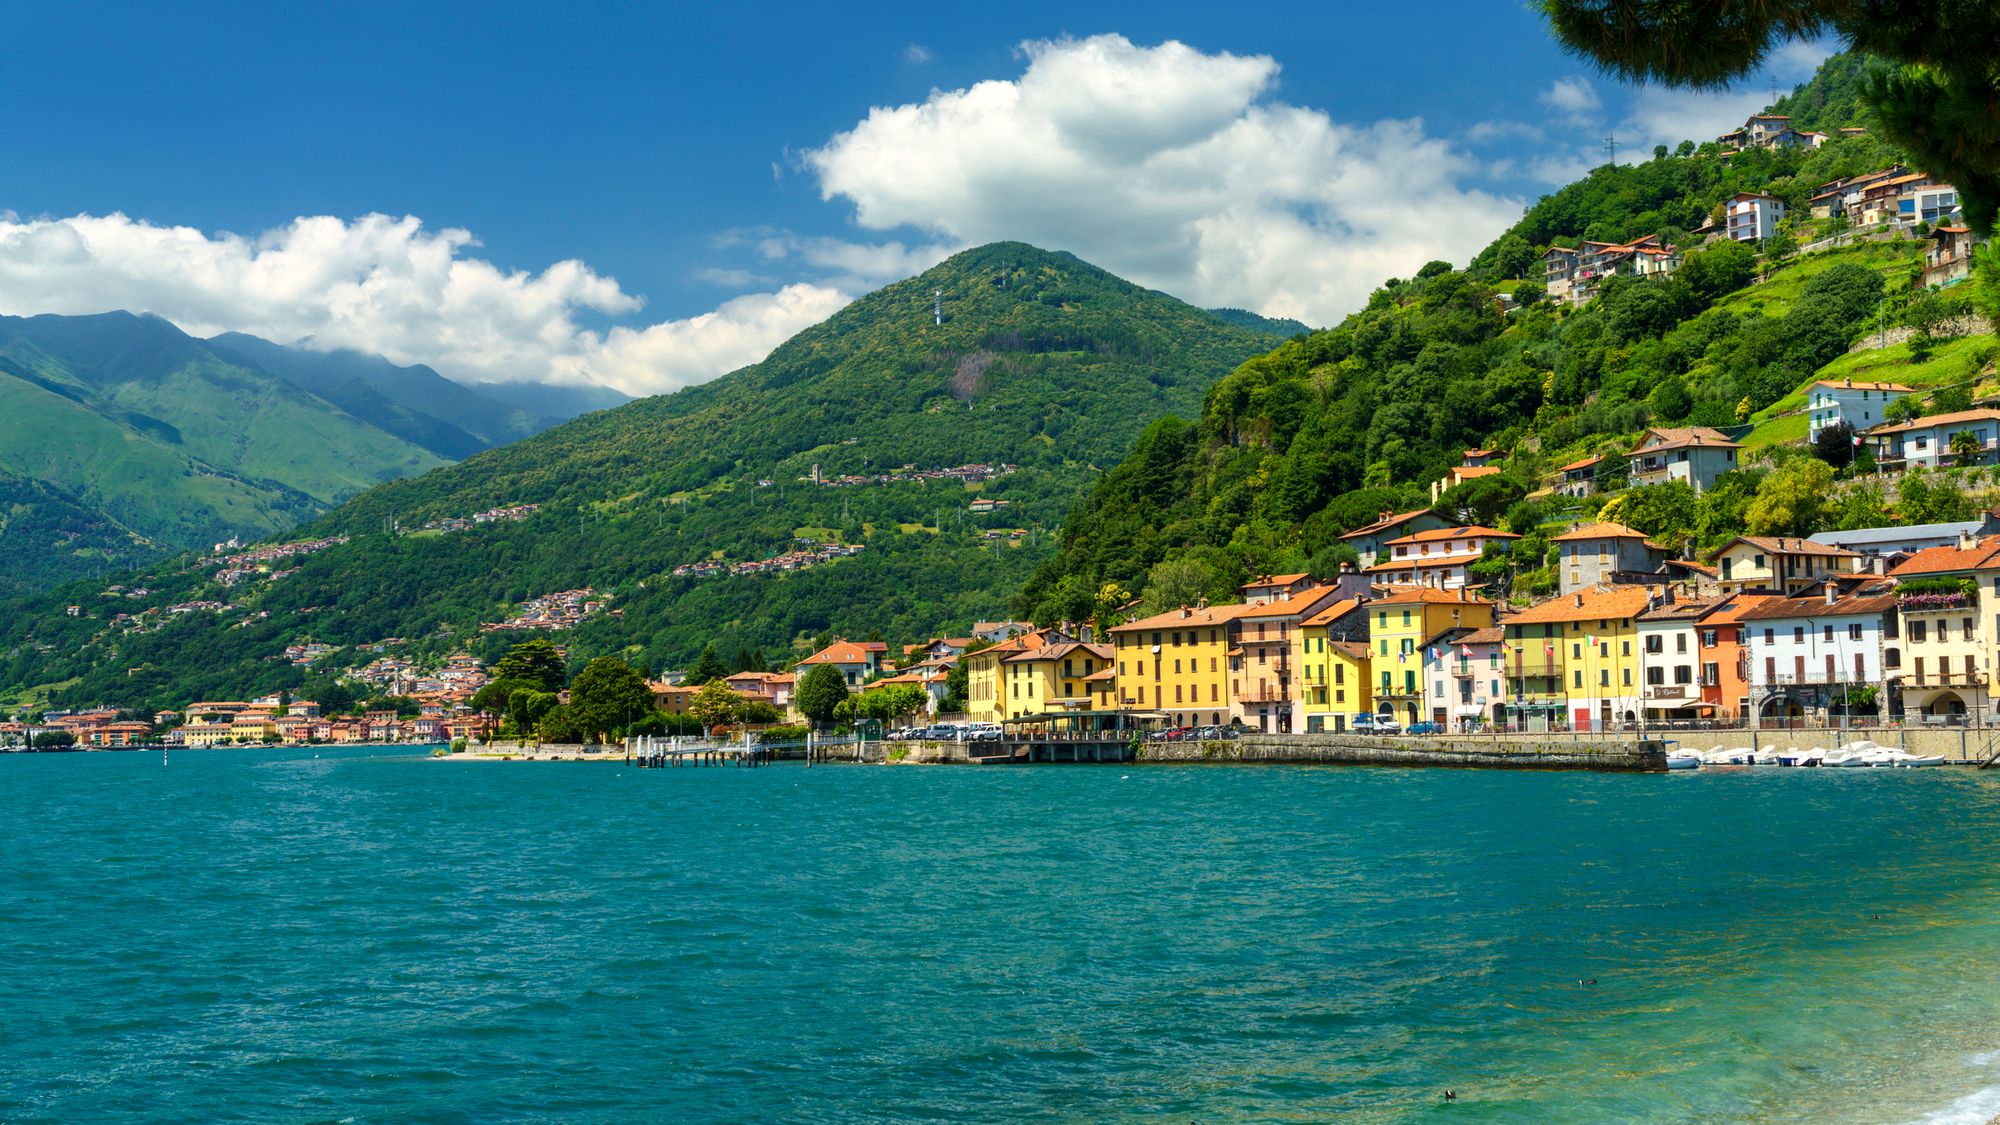 Domaso, a town on Lake Como.